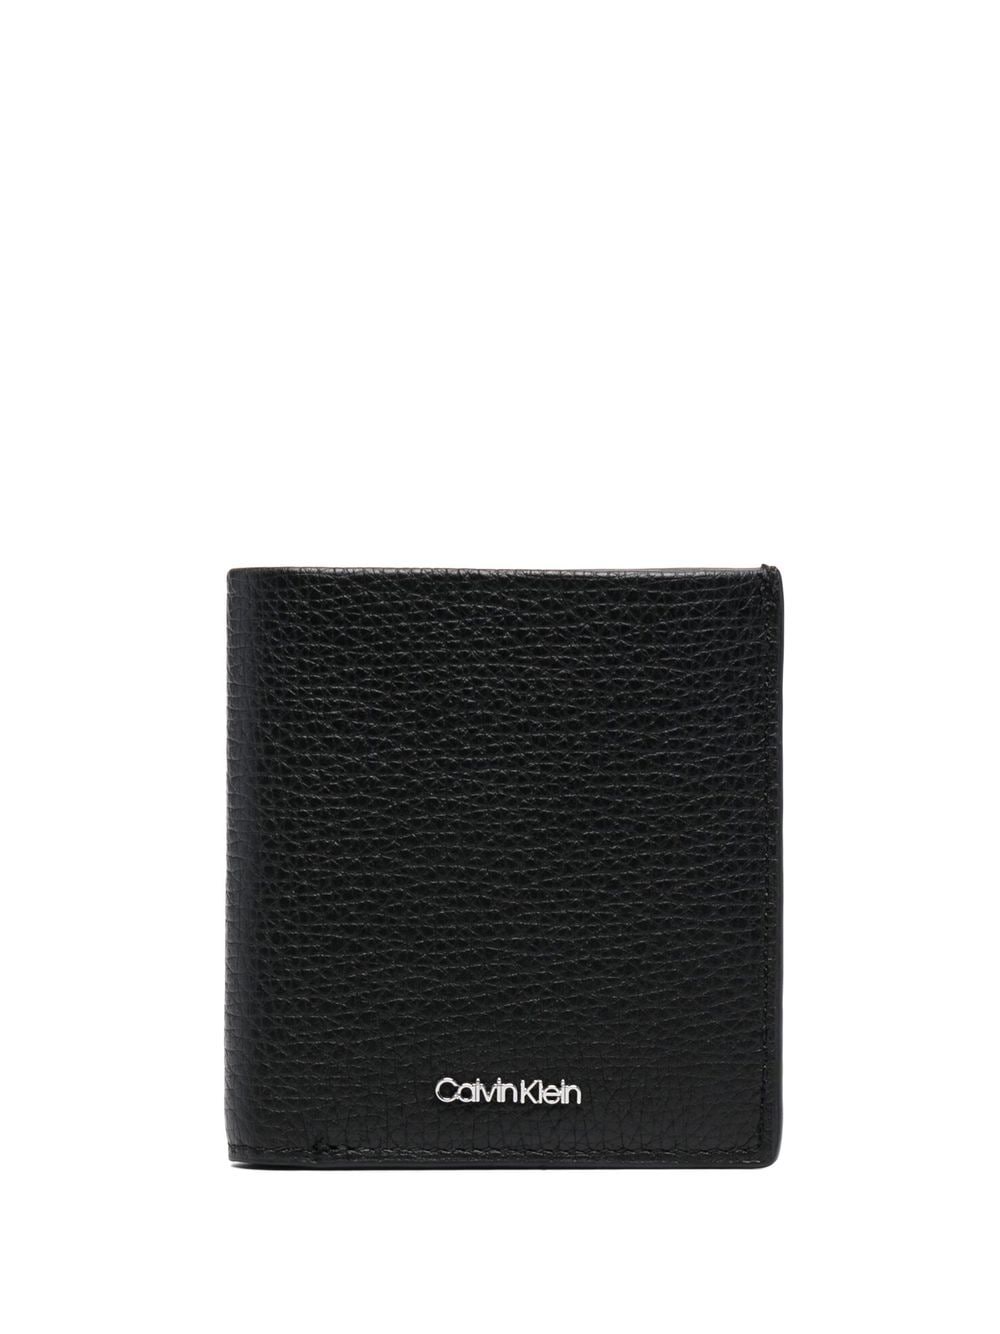 Calvin Klein grained leather wallet - Black von Calvin Klein